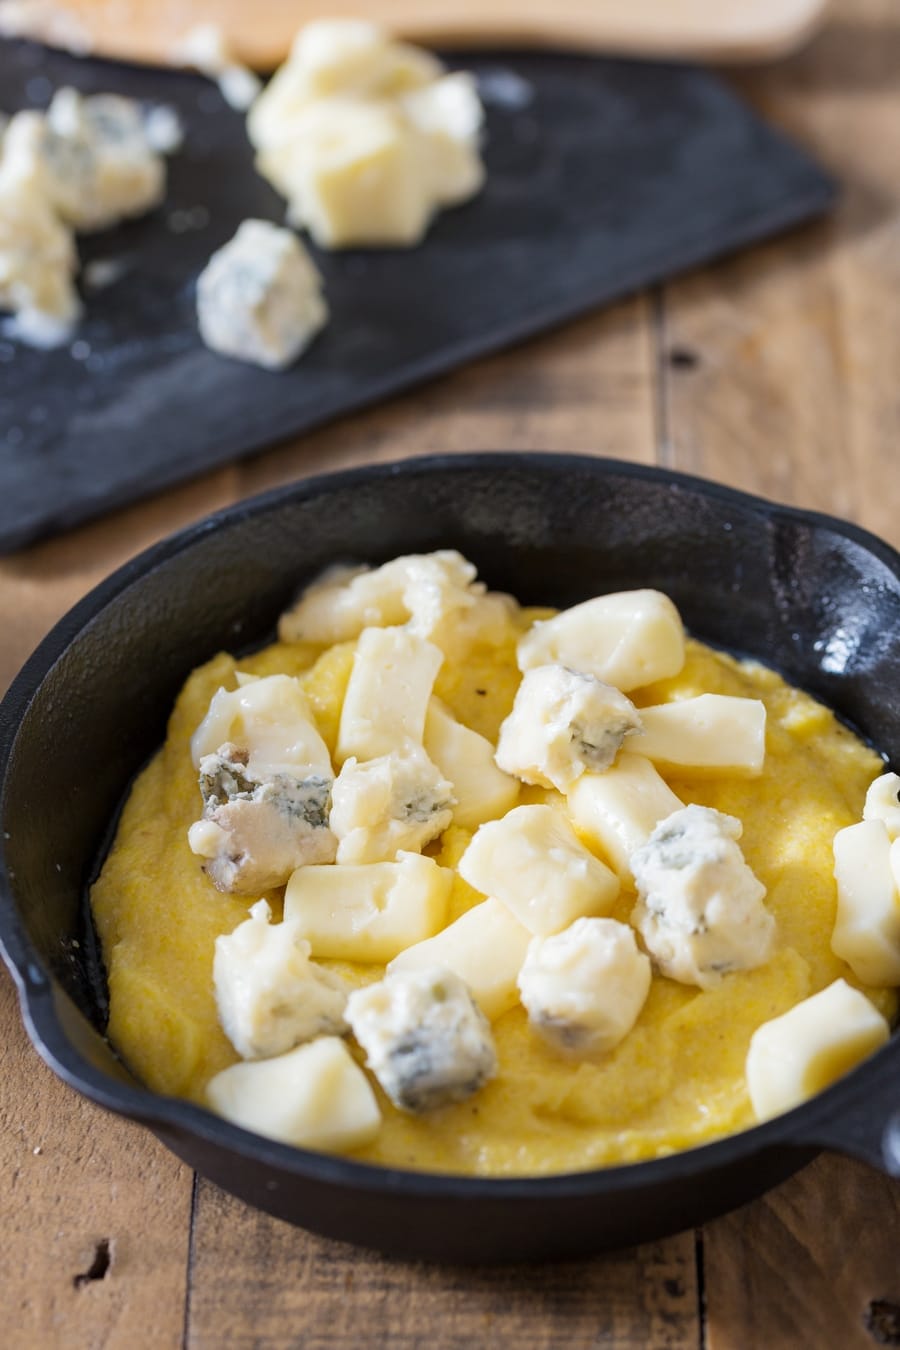 Polenta concia preparation: adding cubed cheese to polenta.